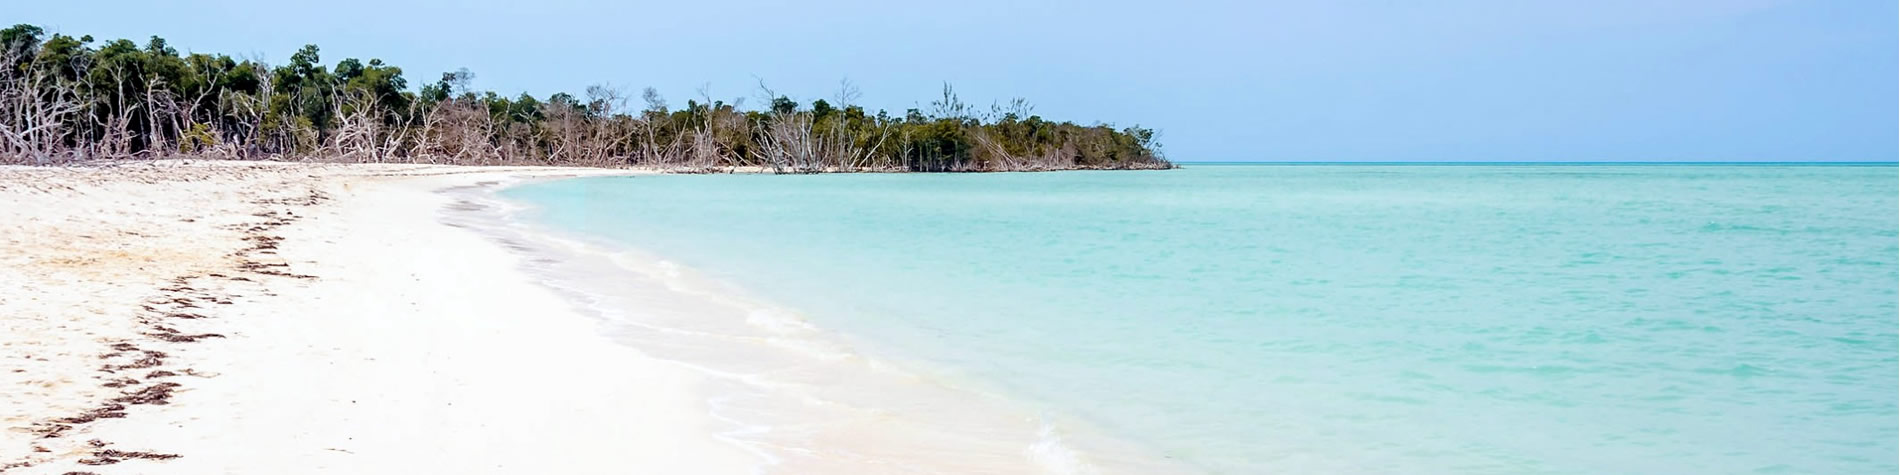 View of Cayo Levisa beach in Pinar del Rio , Cuba